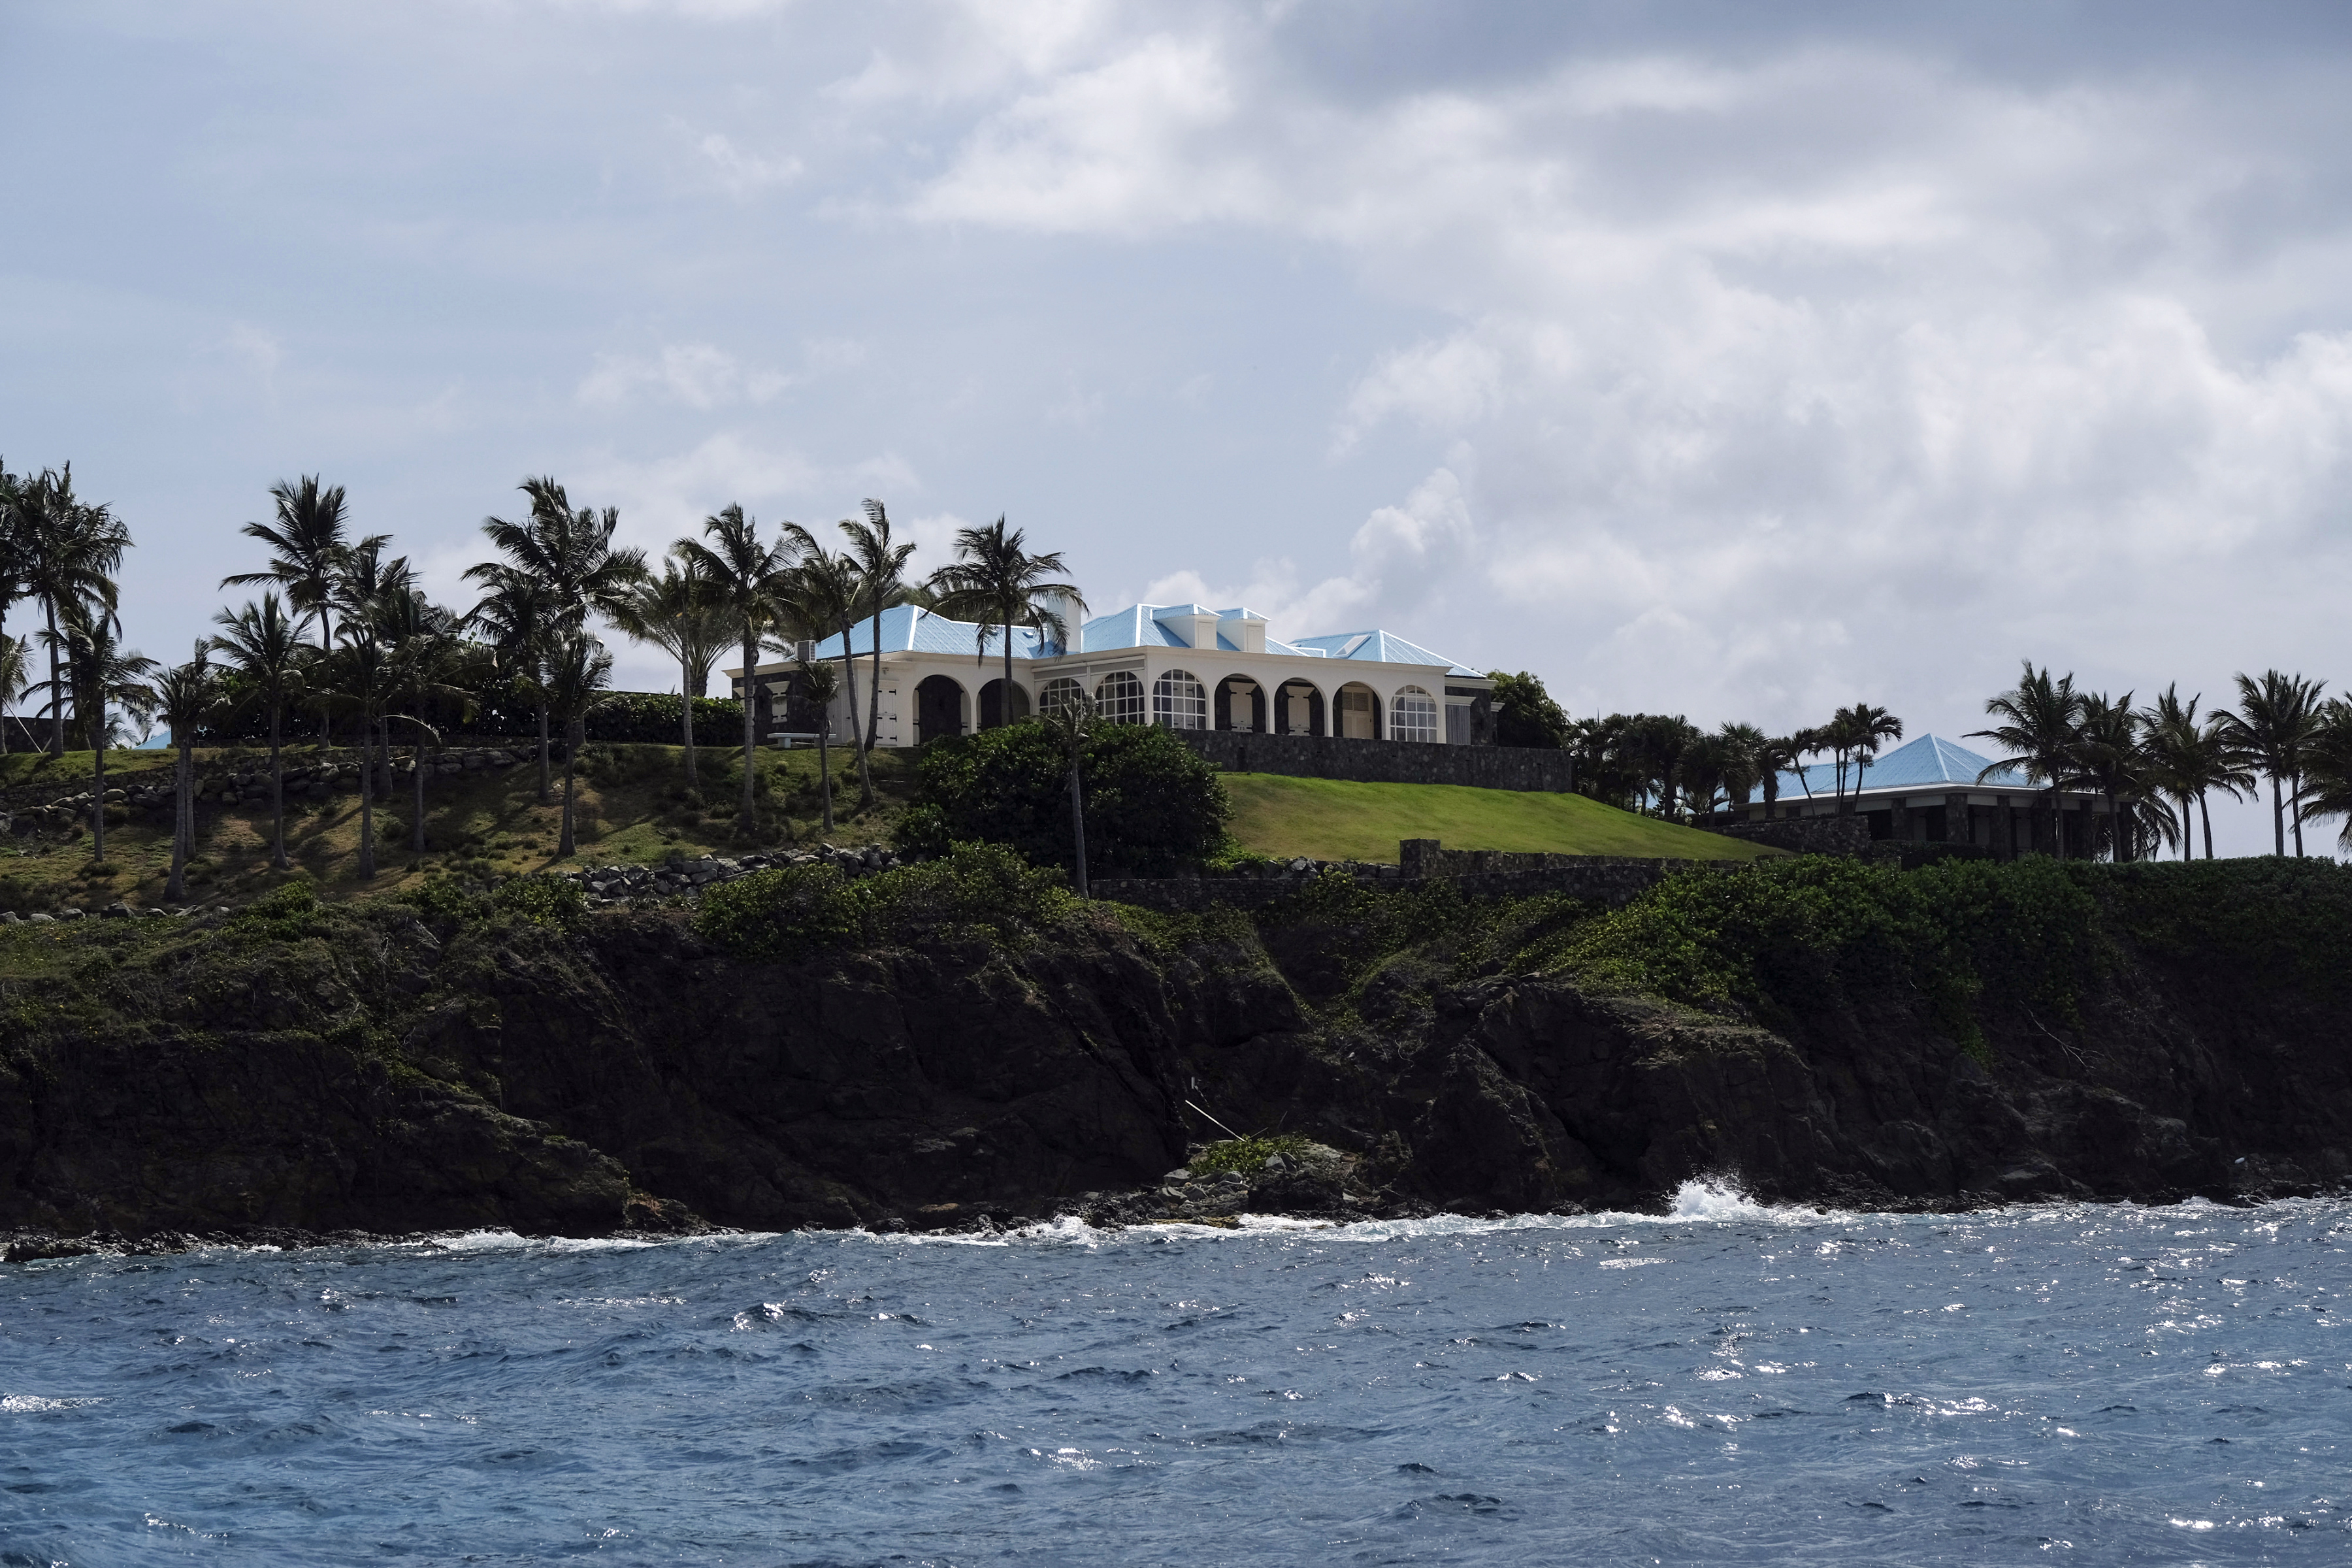 Foto de una de las islas privadas propiedad del difunto financiero Jeffrey Epstein, en las Islas Vírgenes de Estados Unidos, 27 de agosto de 2019. (Foto Prensa Libre: Gabriella N. Báez/The New York Times)